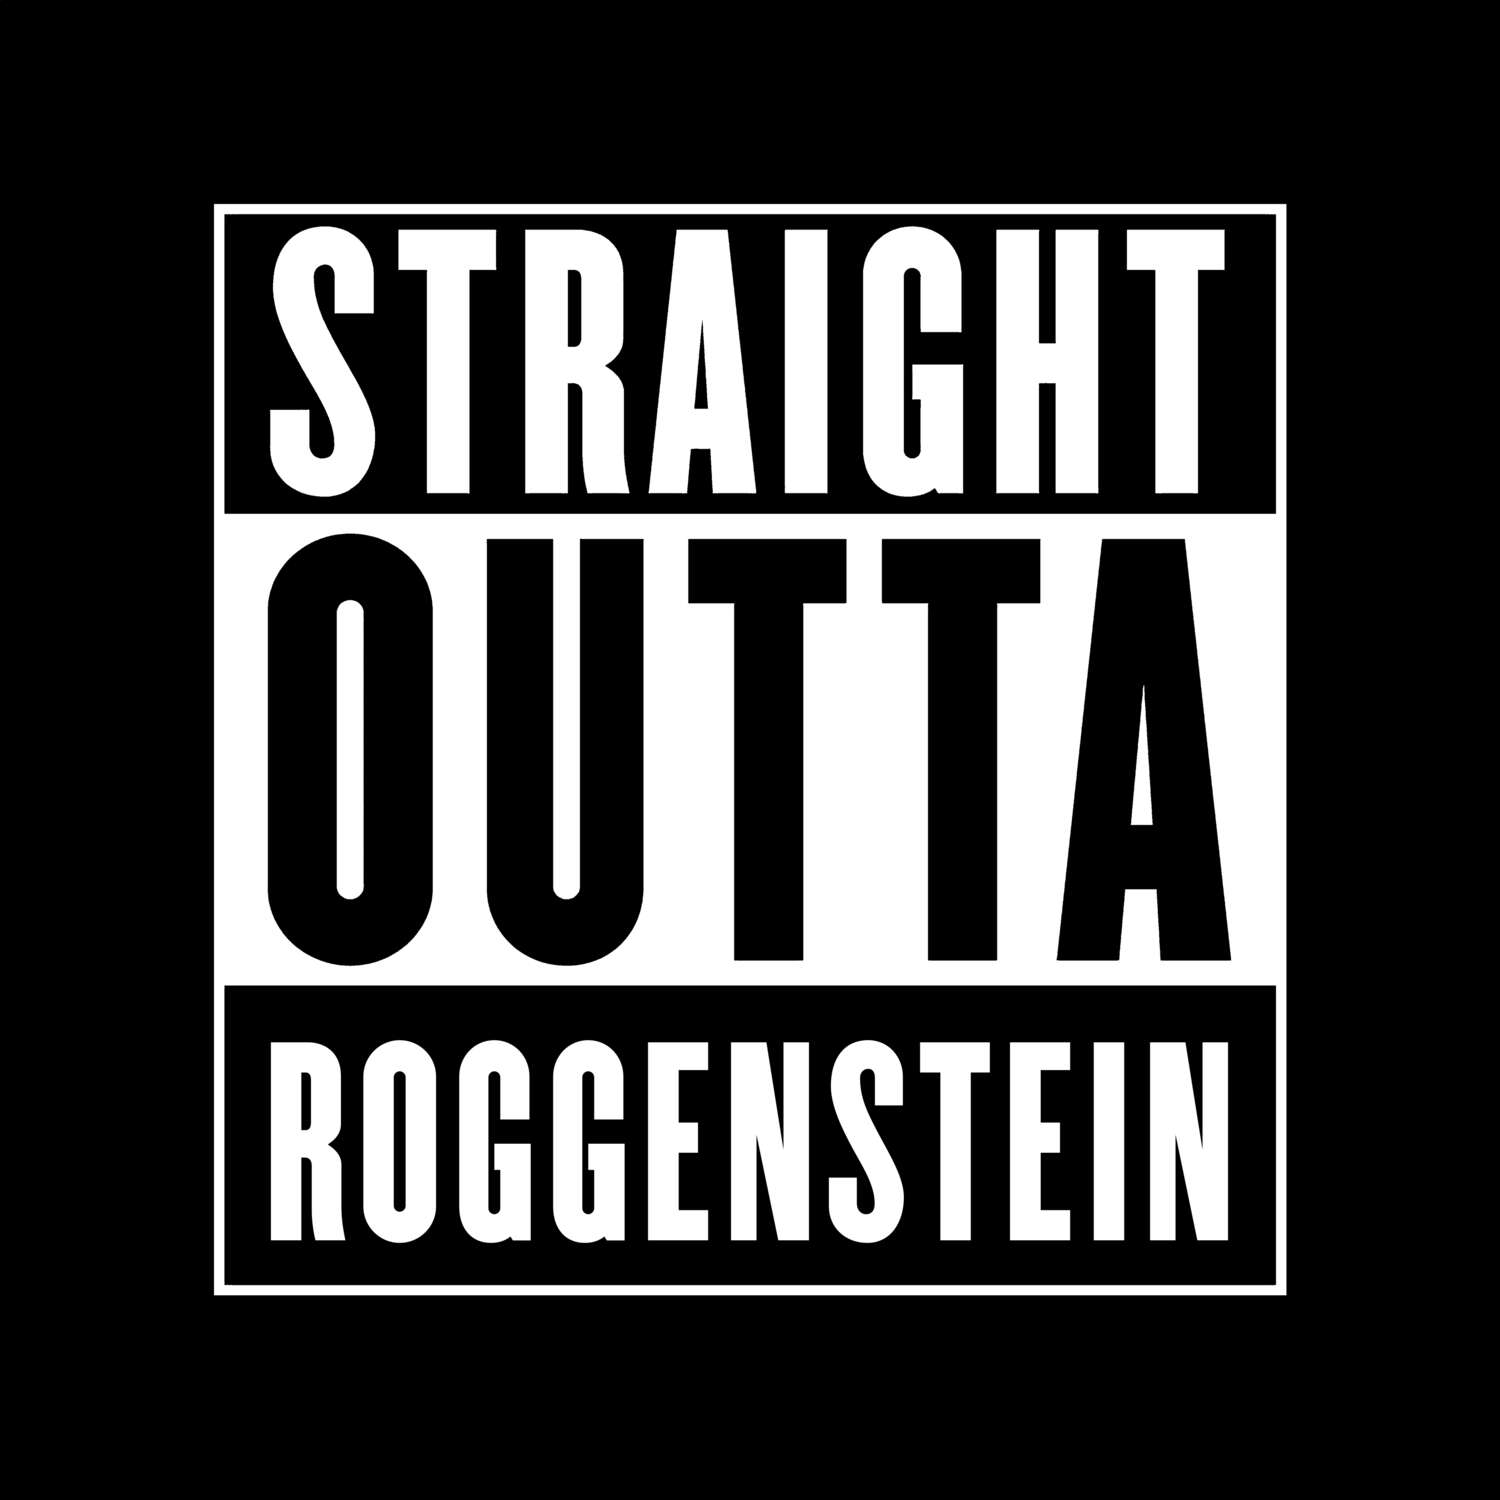 Roggenstein T-Shirt »Straight Outta«